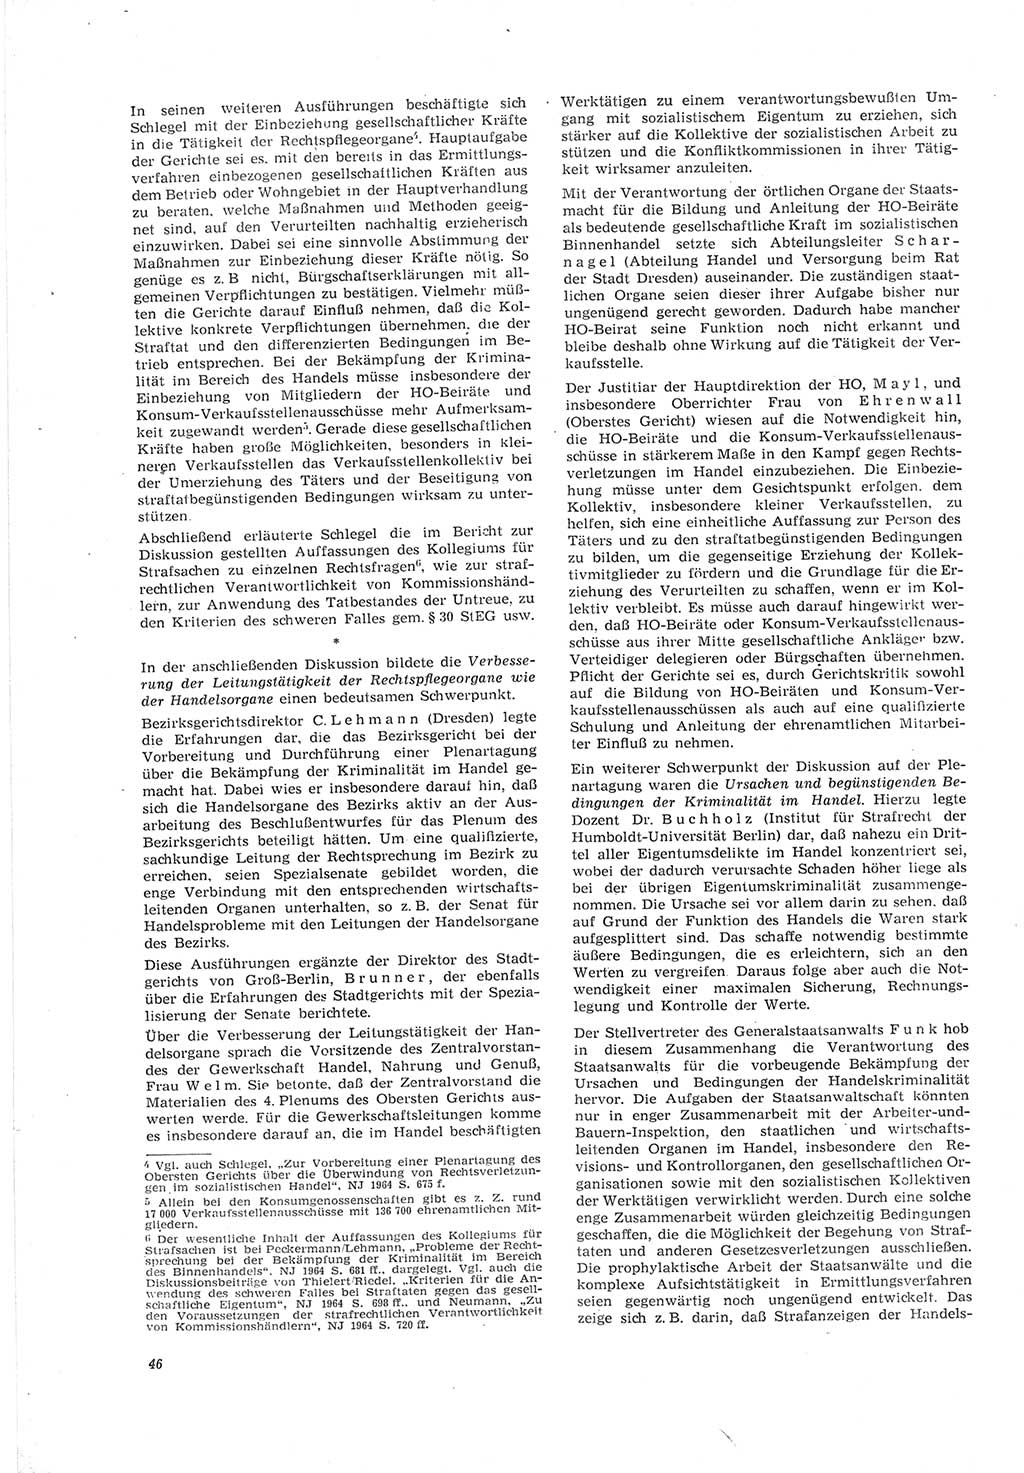 Neue Justiz (NJ), Zeitschrift für Recht und Rechtswissenschaft [Deutsche Demokratische Republik (DDR)], 19. Jahrgang 1965, Seite 46 (NJ DDR 1965, S. 46)